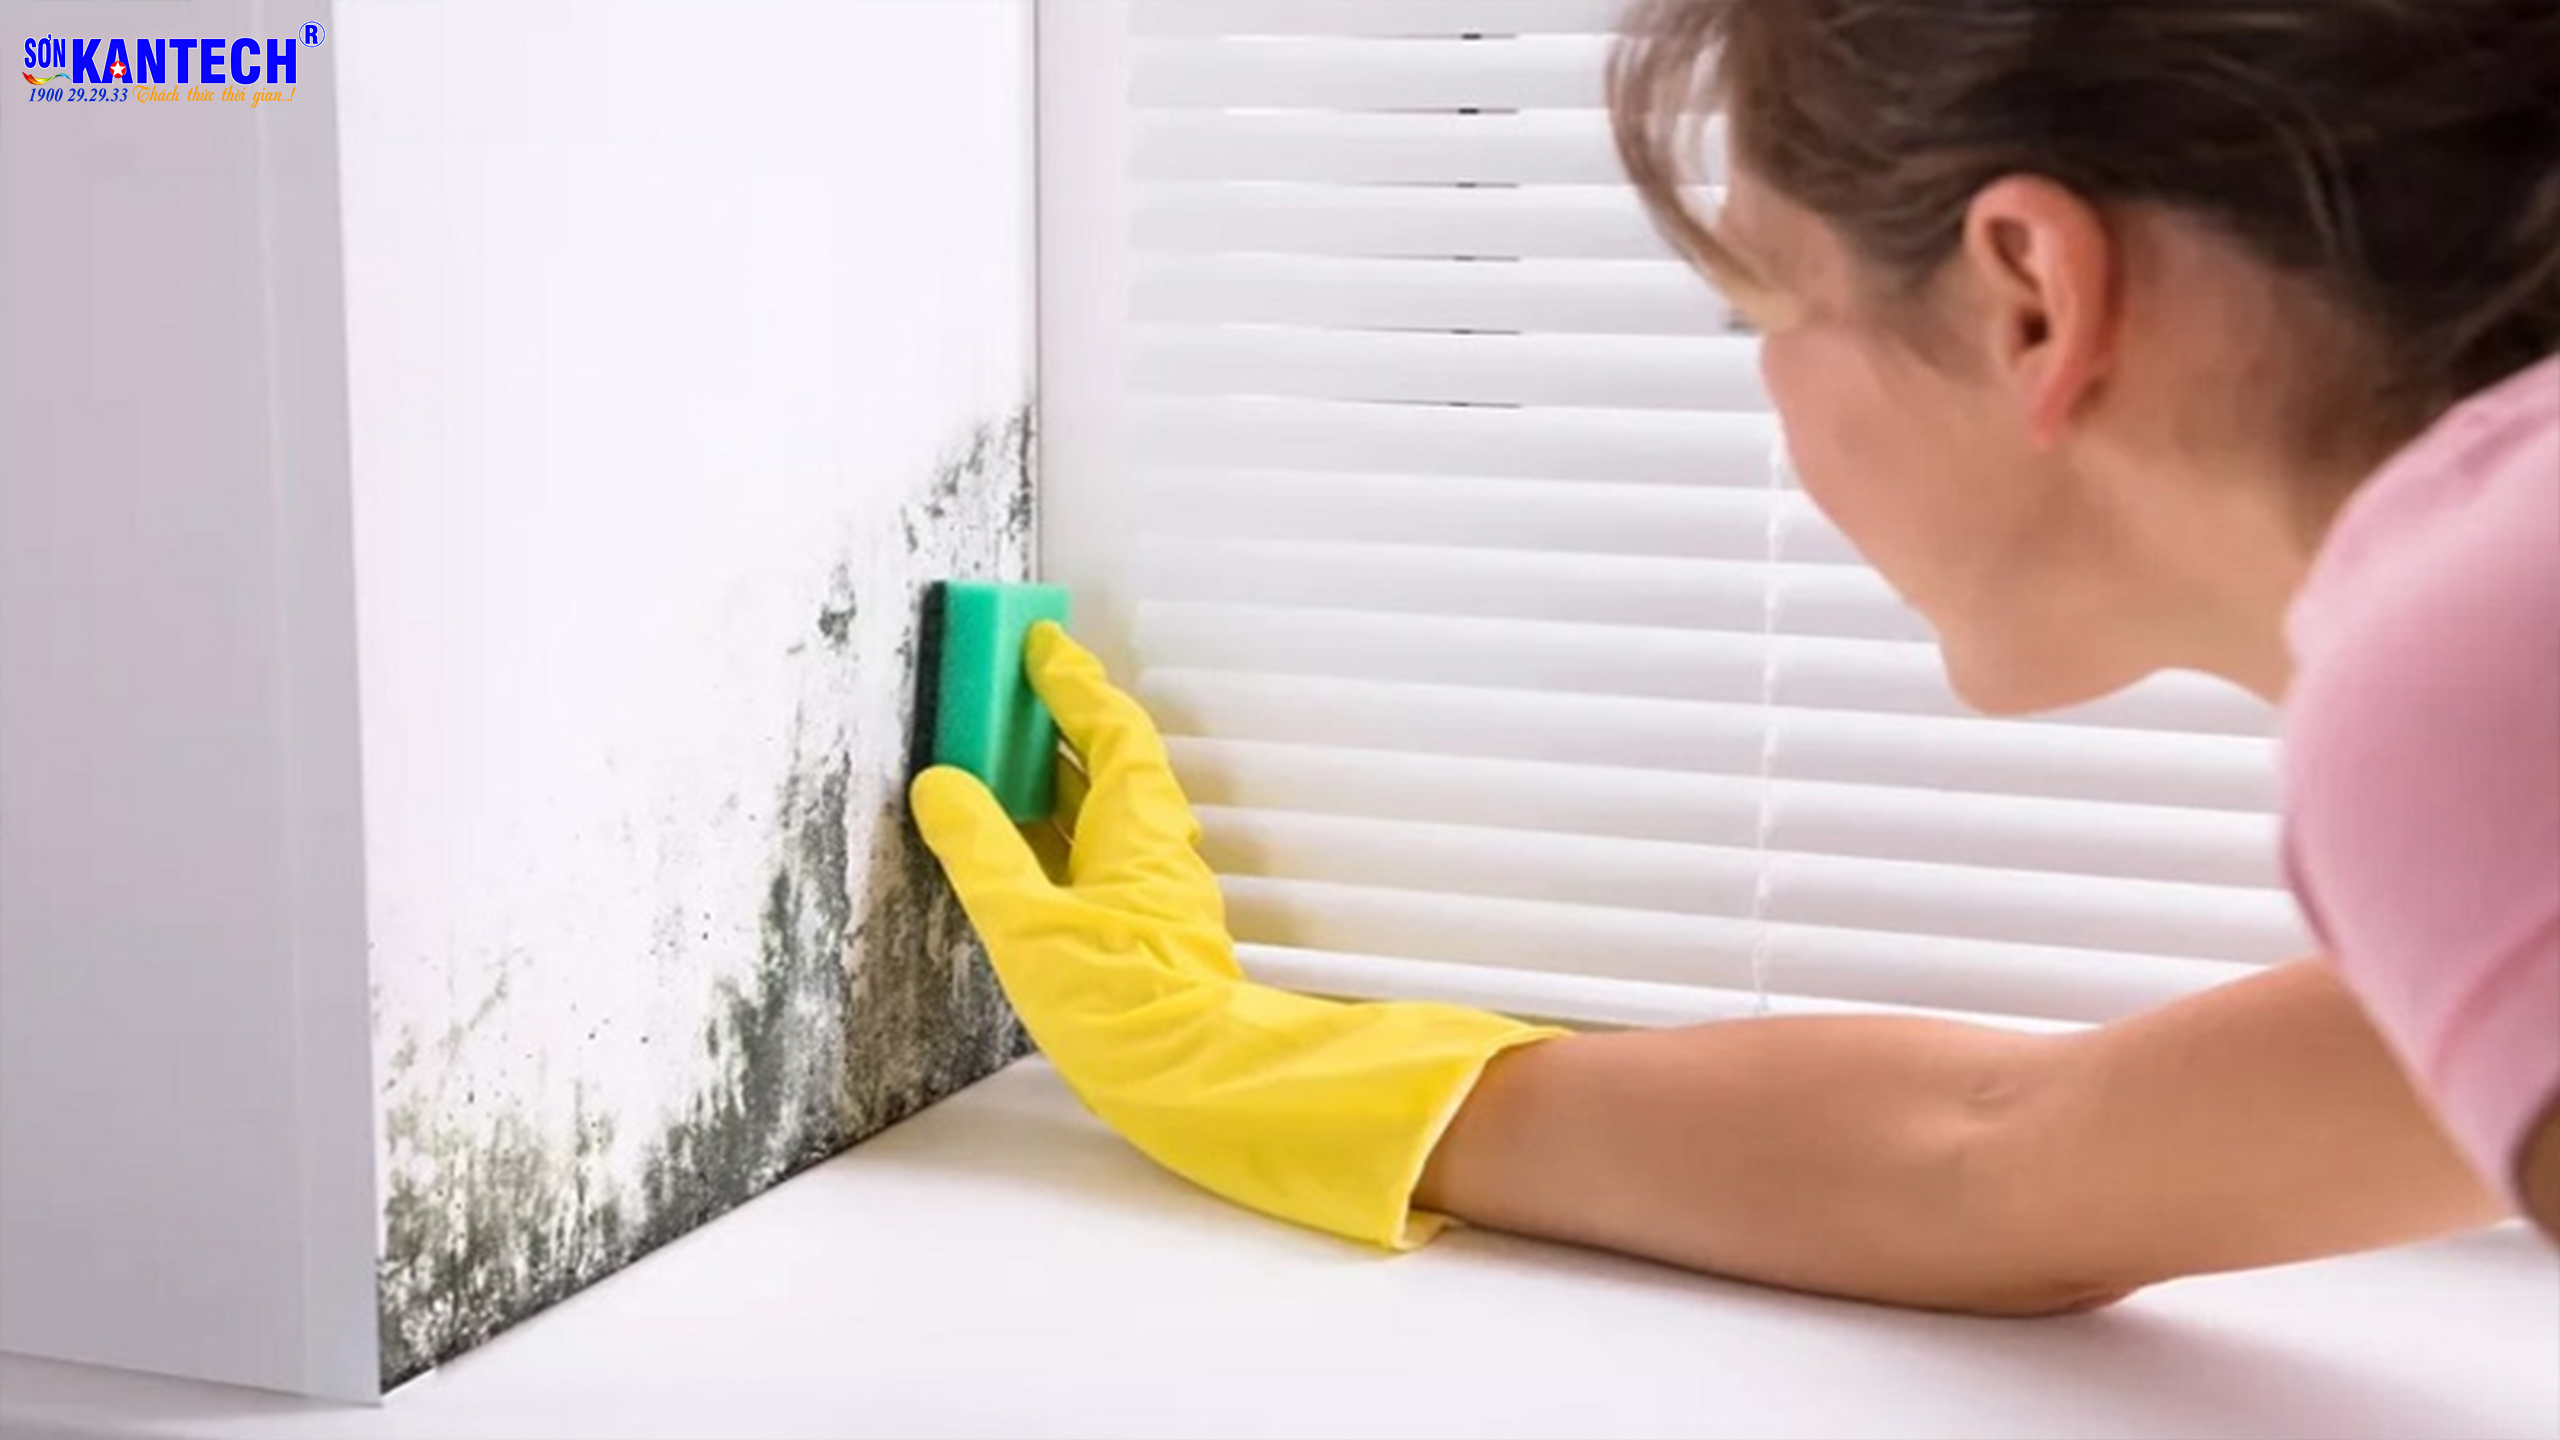 Vệ sinh sơn tường: Bạn muốn tường nhà luôn sạch sẽ, tươi mới như vừa được sơn mới? Hãy xem hình ảnh vệ sinh sơn tường để biết cách giữ cho bức tường nhà của bạn luôn mới mẻ và trang nhã nhé!